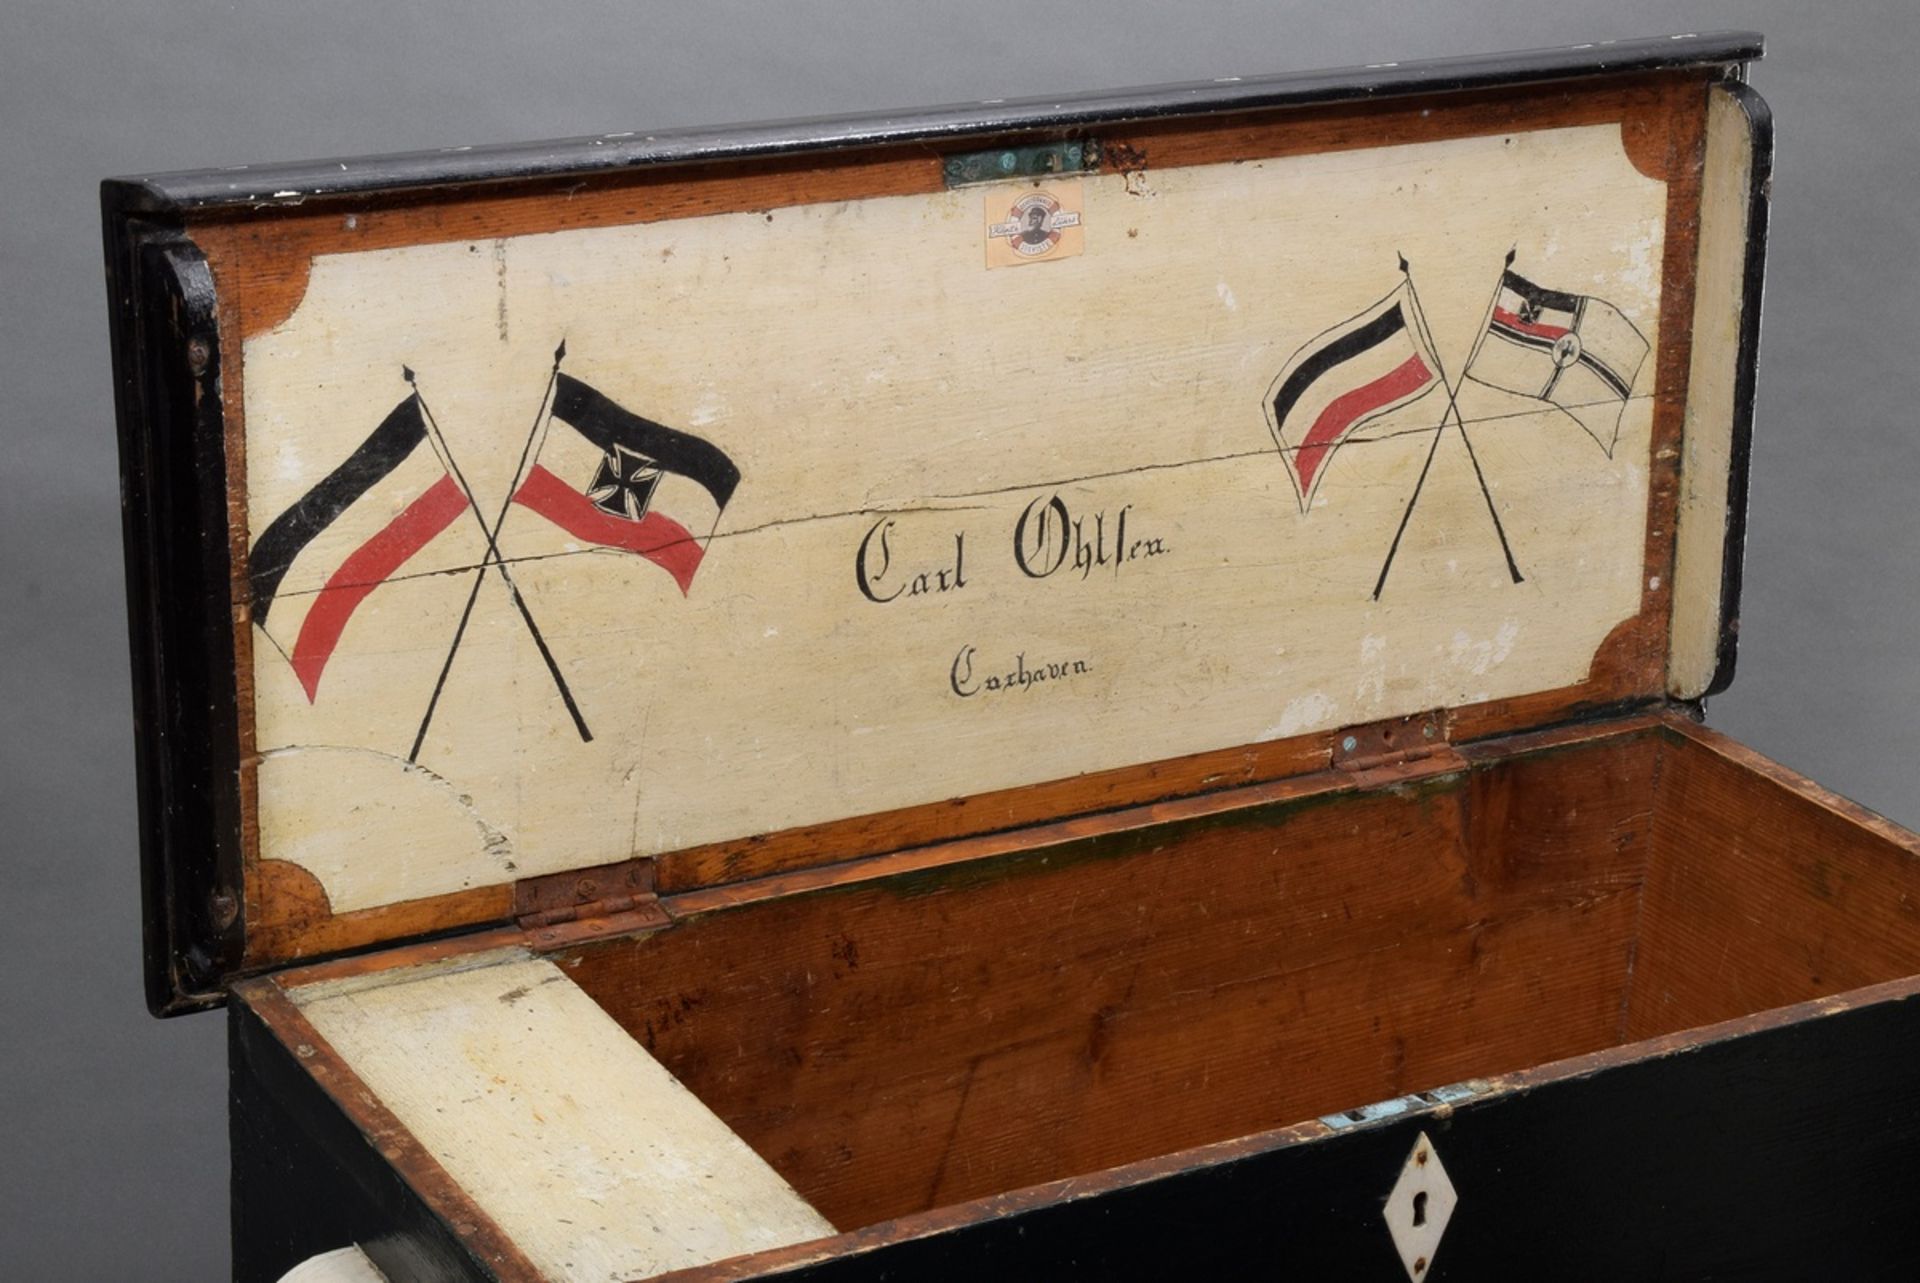 Seekiste von Carl Ohlsen aus Cuxhaven, dat. 1890, Holz/Segeltuch, bemalt mit Flaggen der Kaiserzeit - Bild 5 aus 7